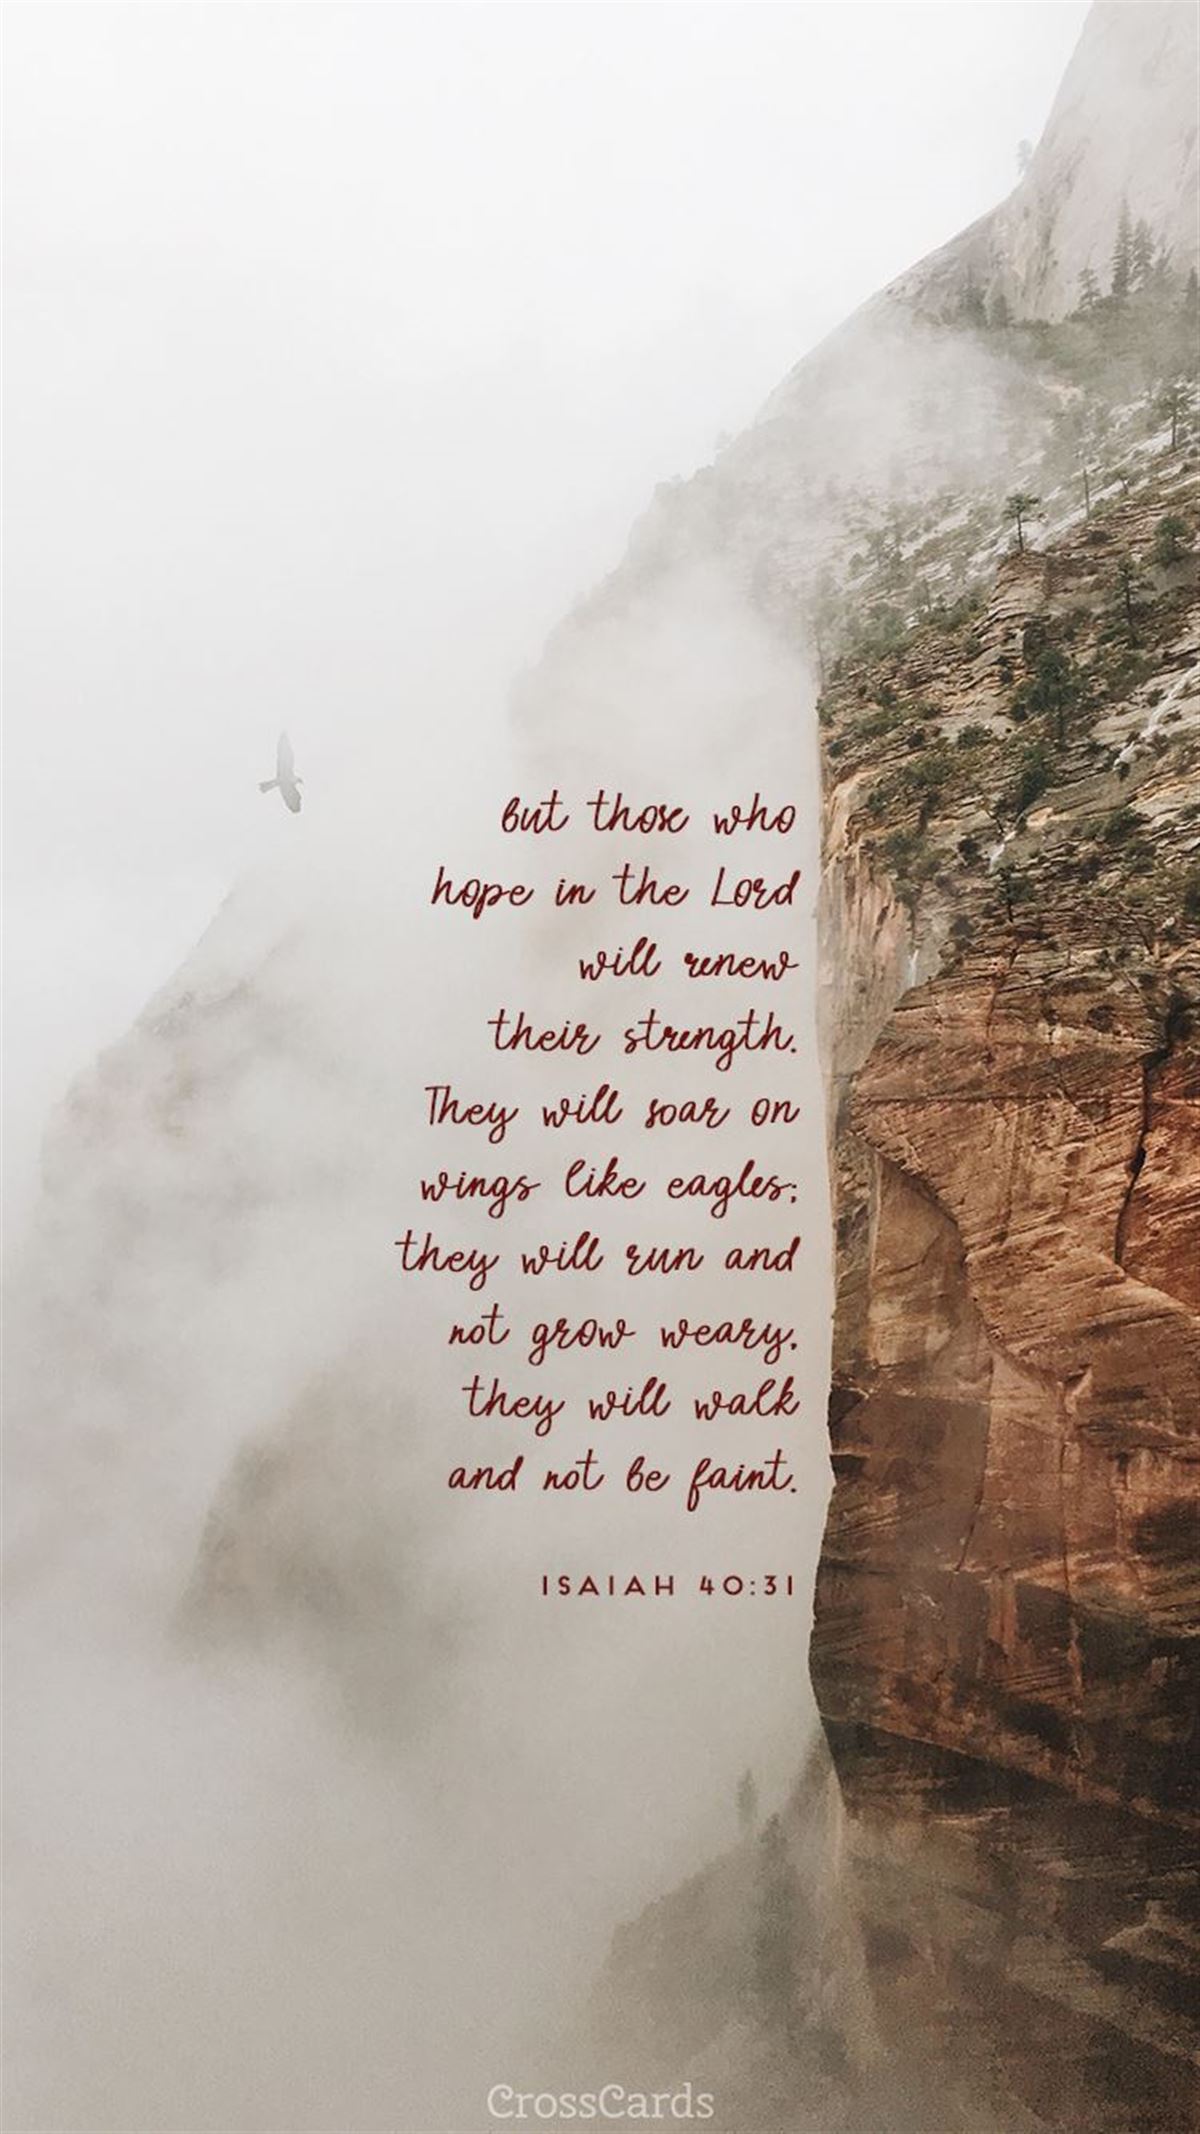 Isaiah 40:31 mobile phone wallpaper